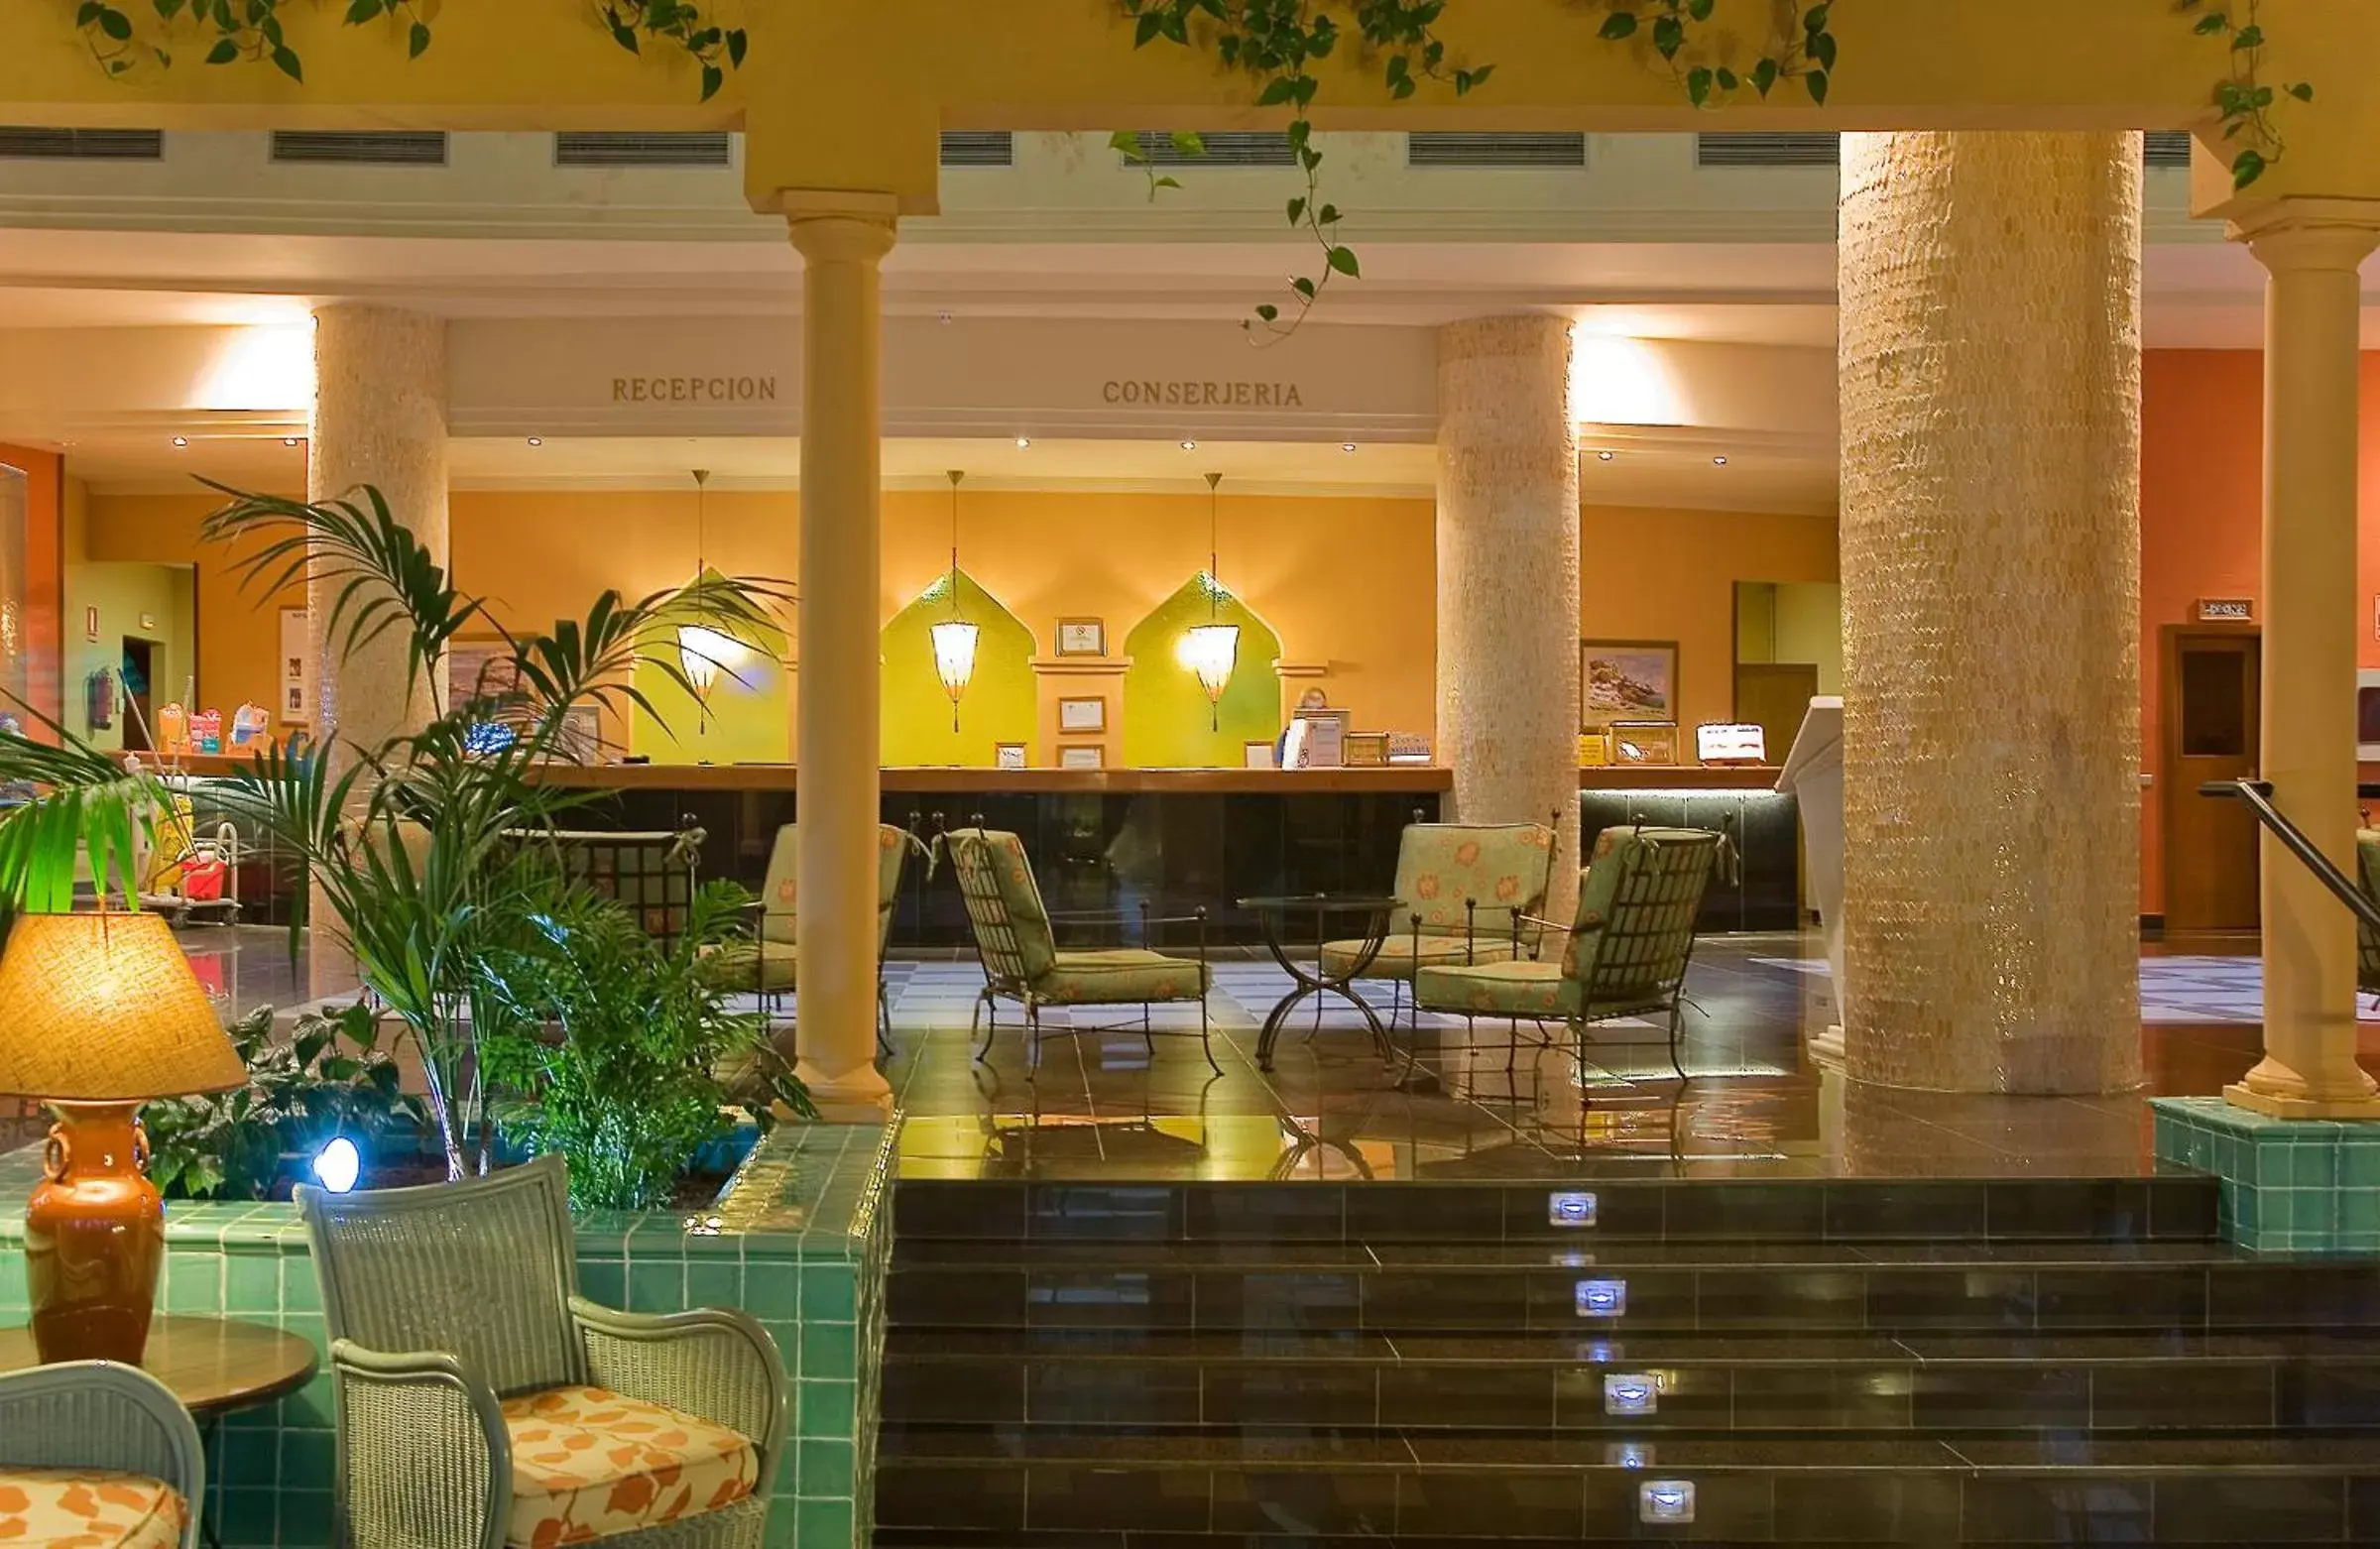 Lobby or reception in Playacanela Hotel